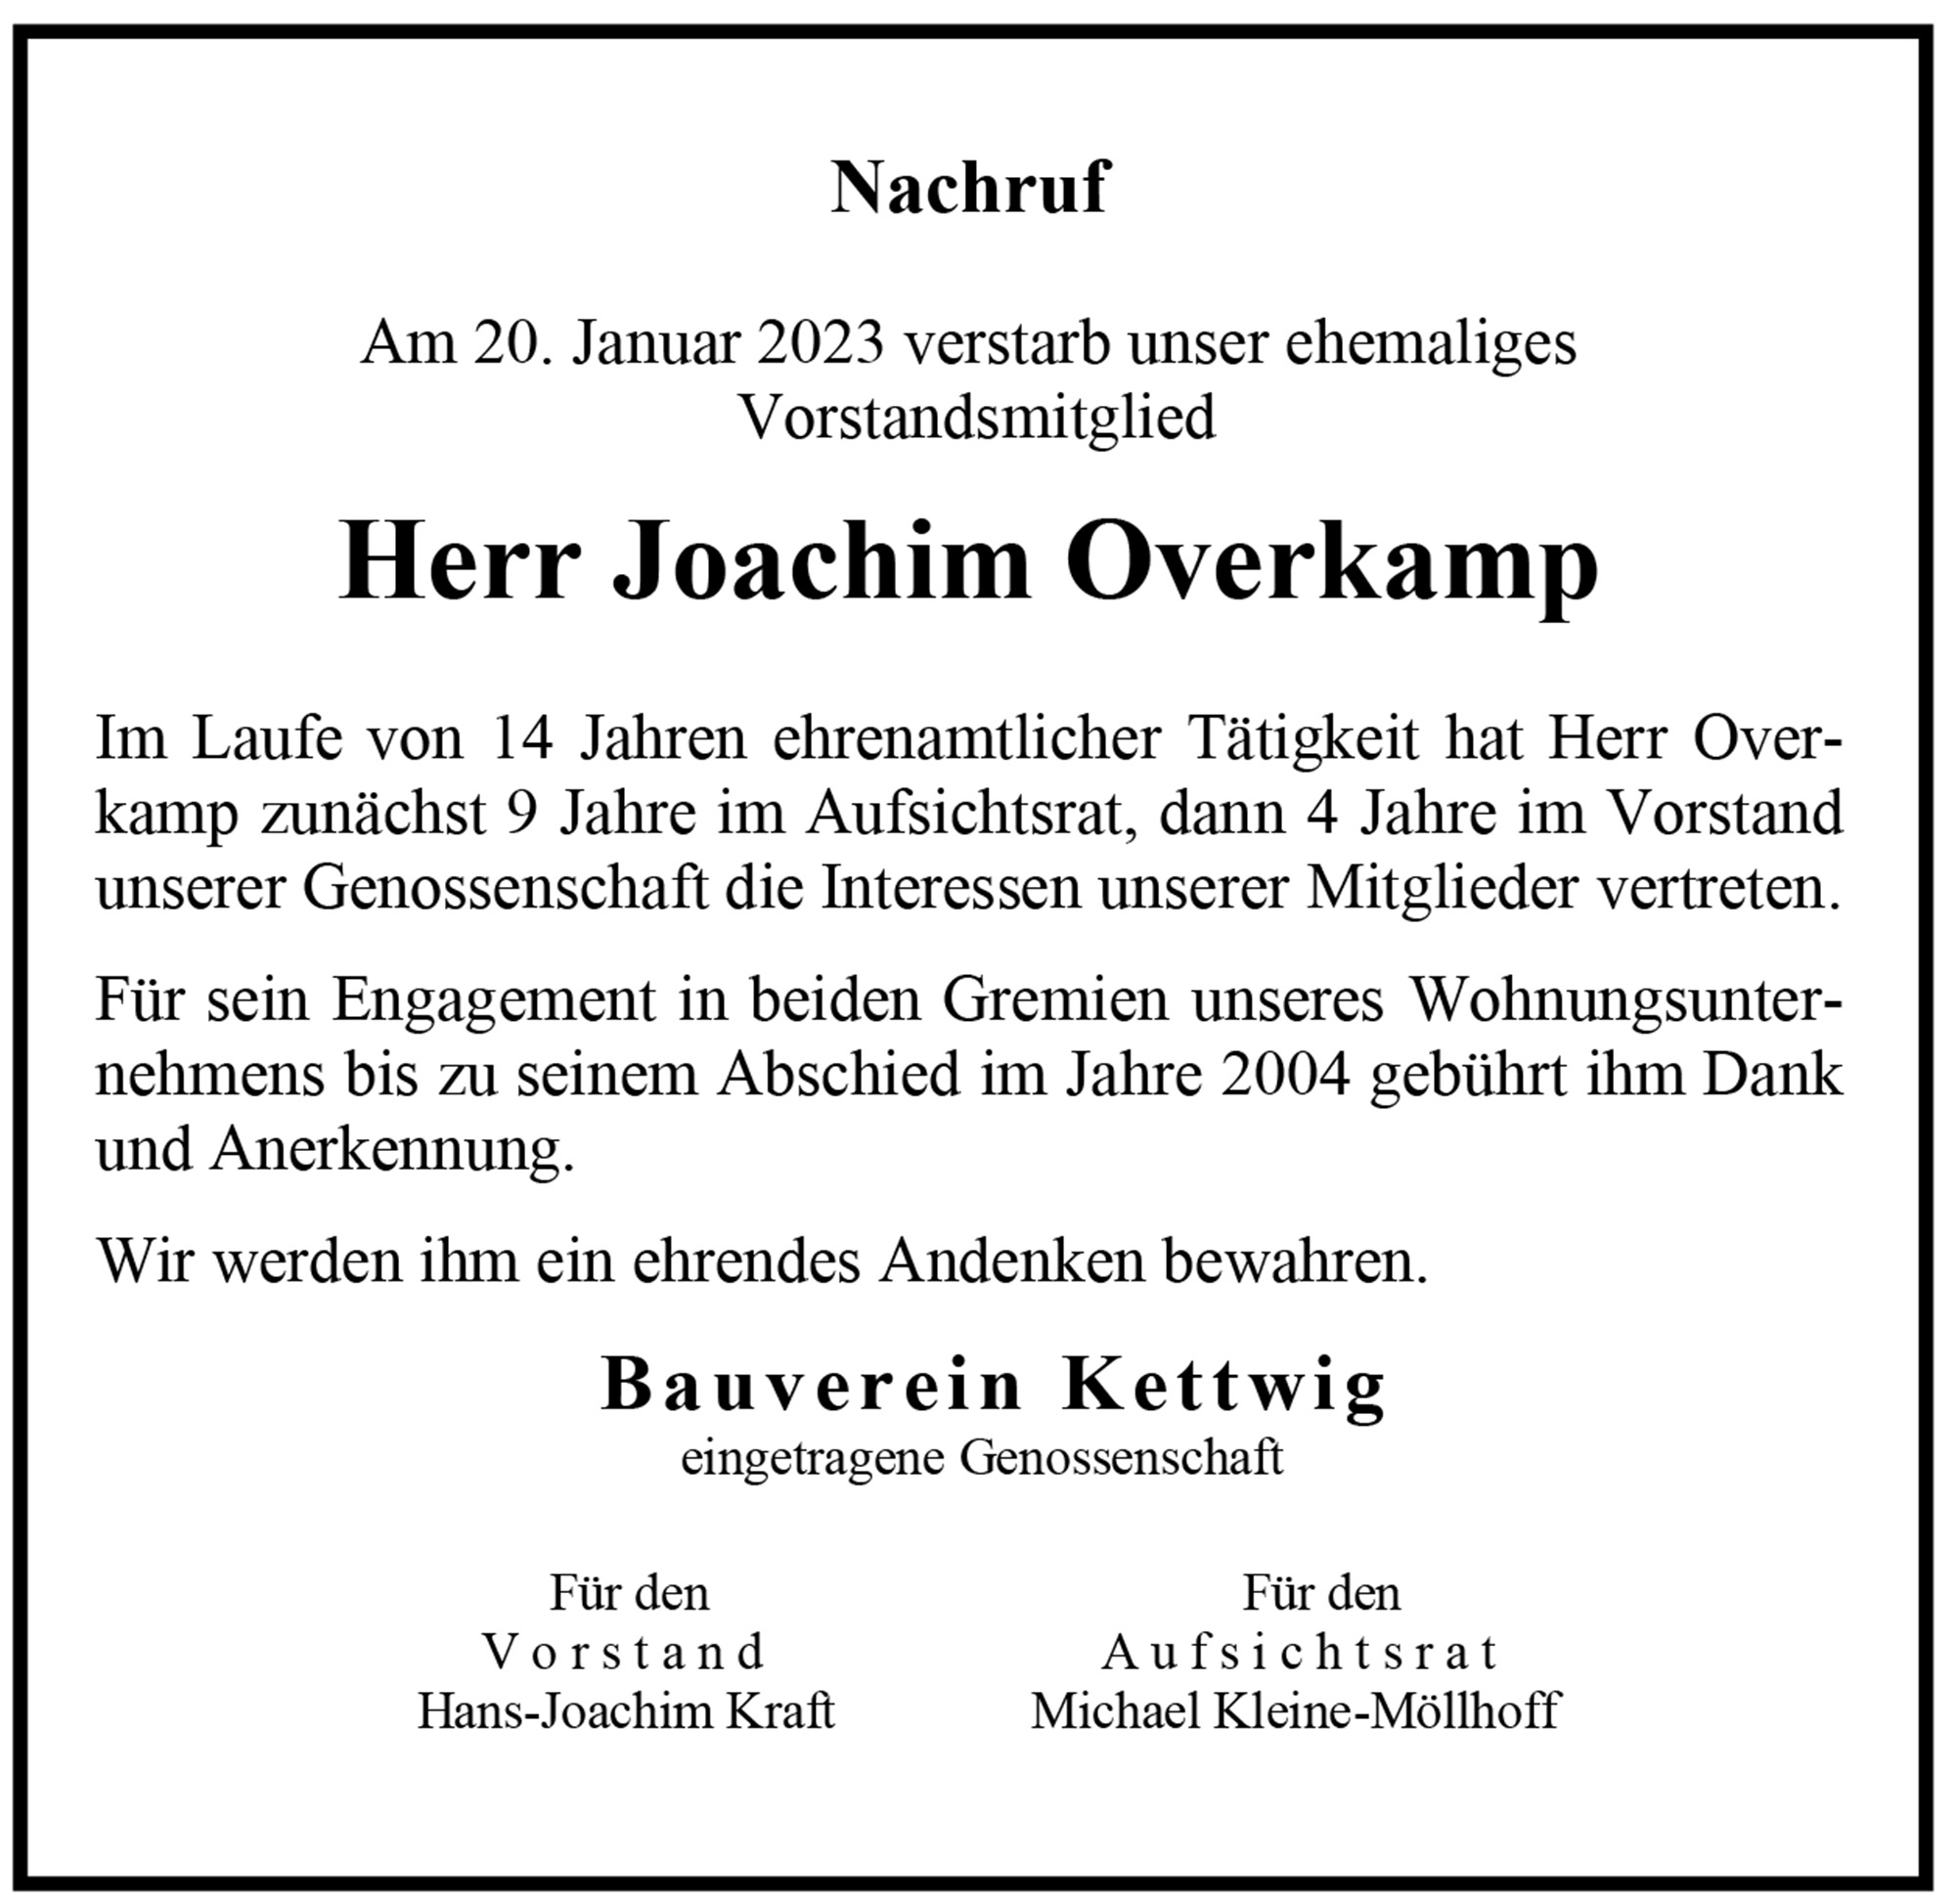 Nachruf zum Tod von Joachim Overkamp